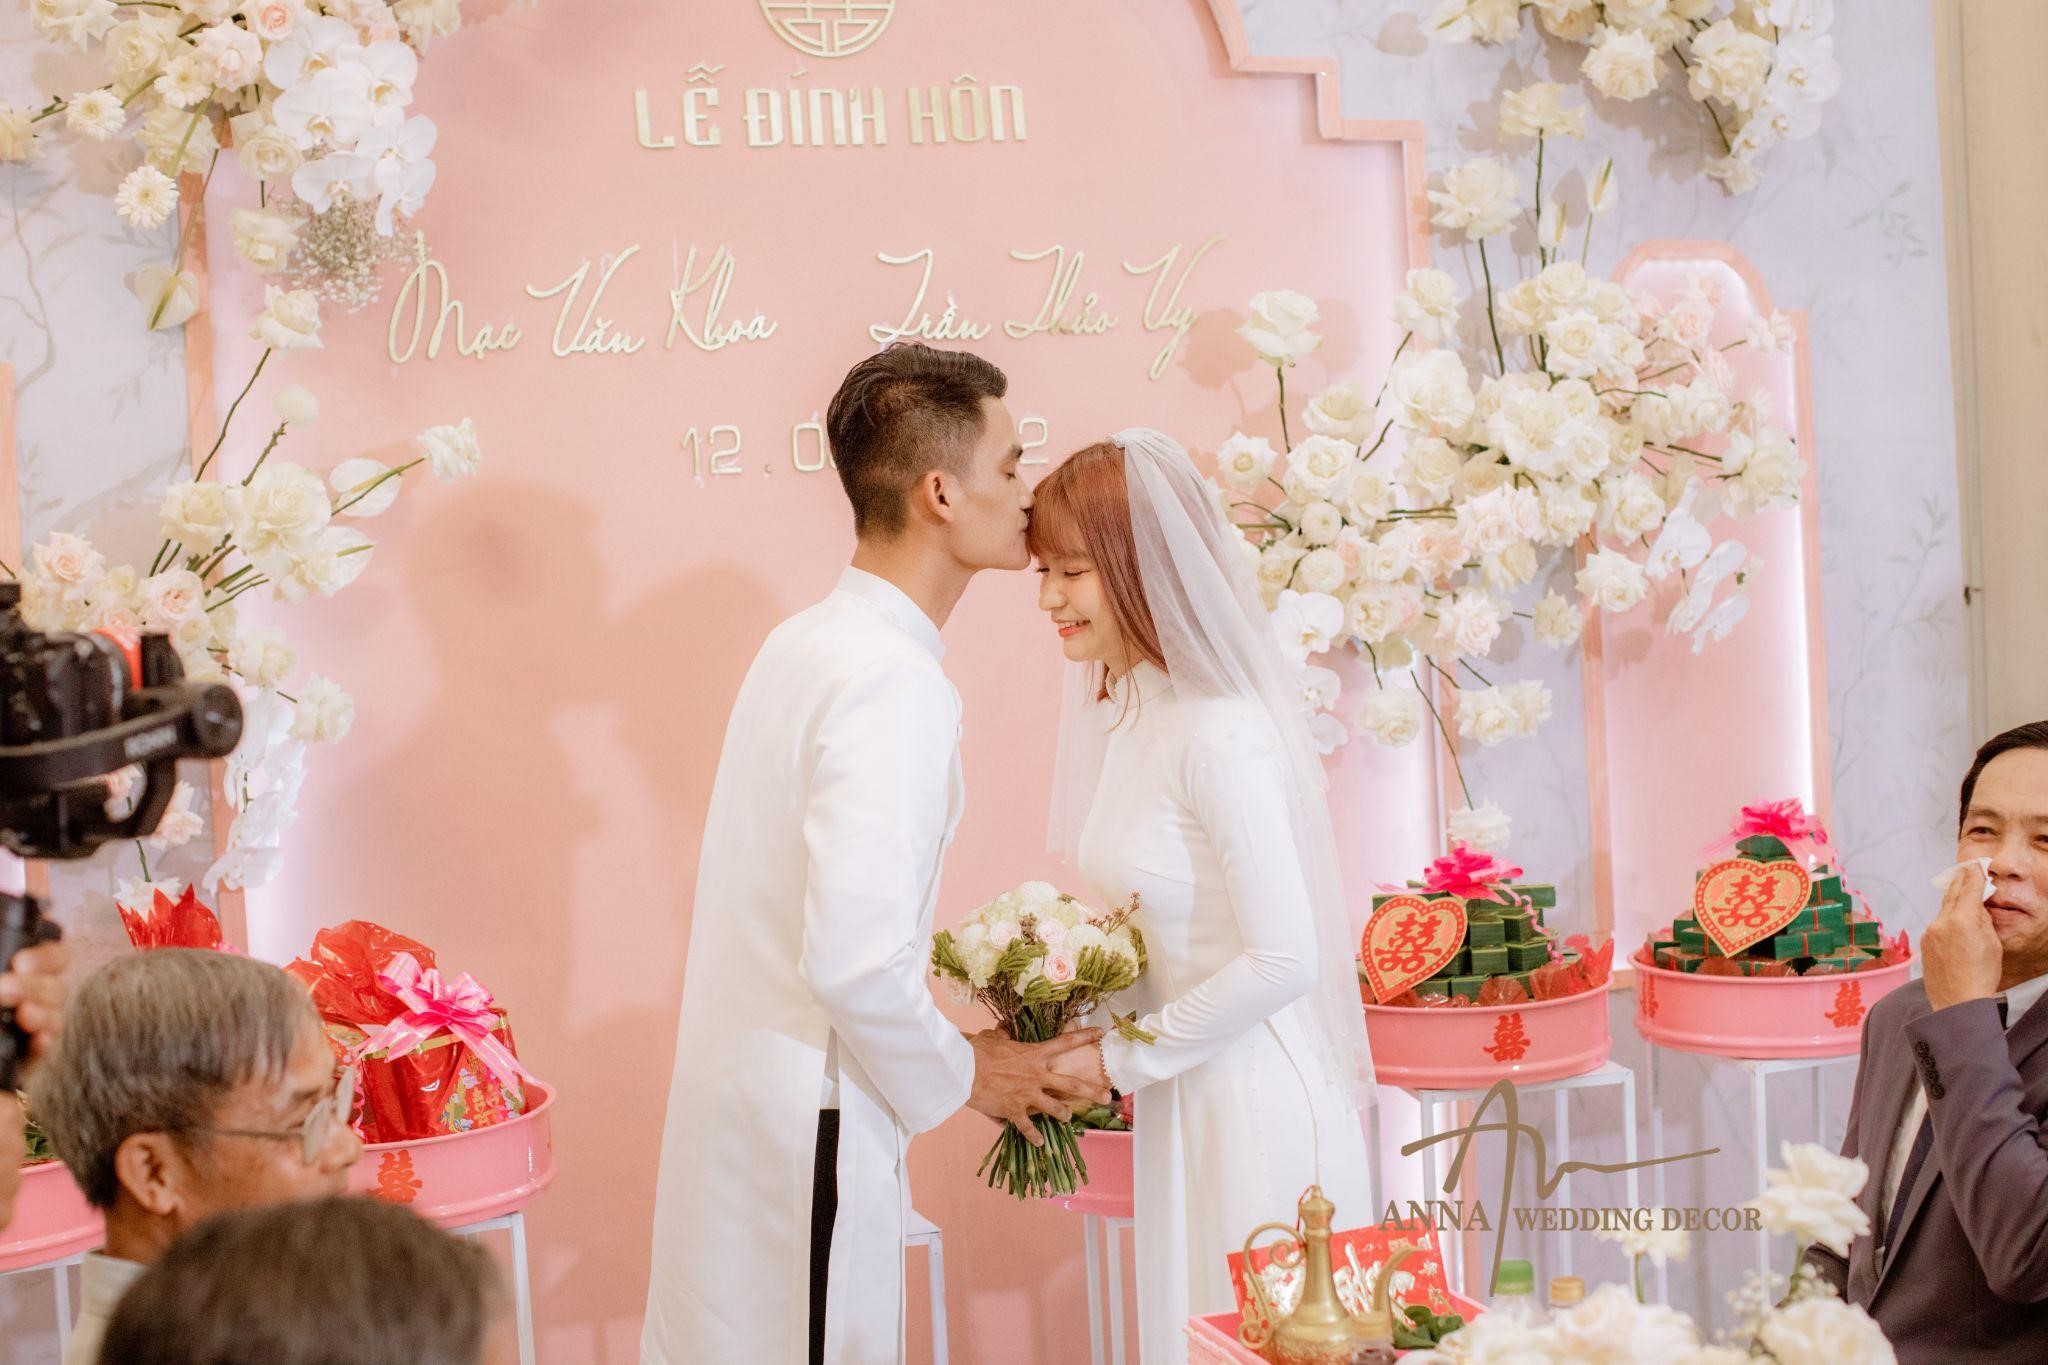 Hé lộ đám cưới khủng của Mạc Văn Khoa: Decor tiệc hơn 3 tấn hoa tươi